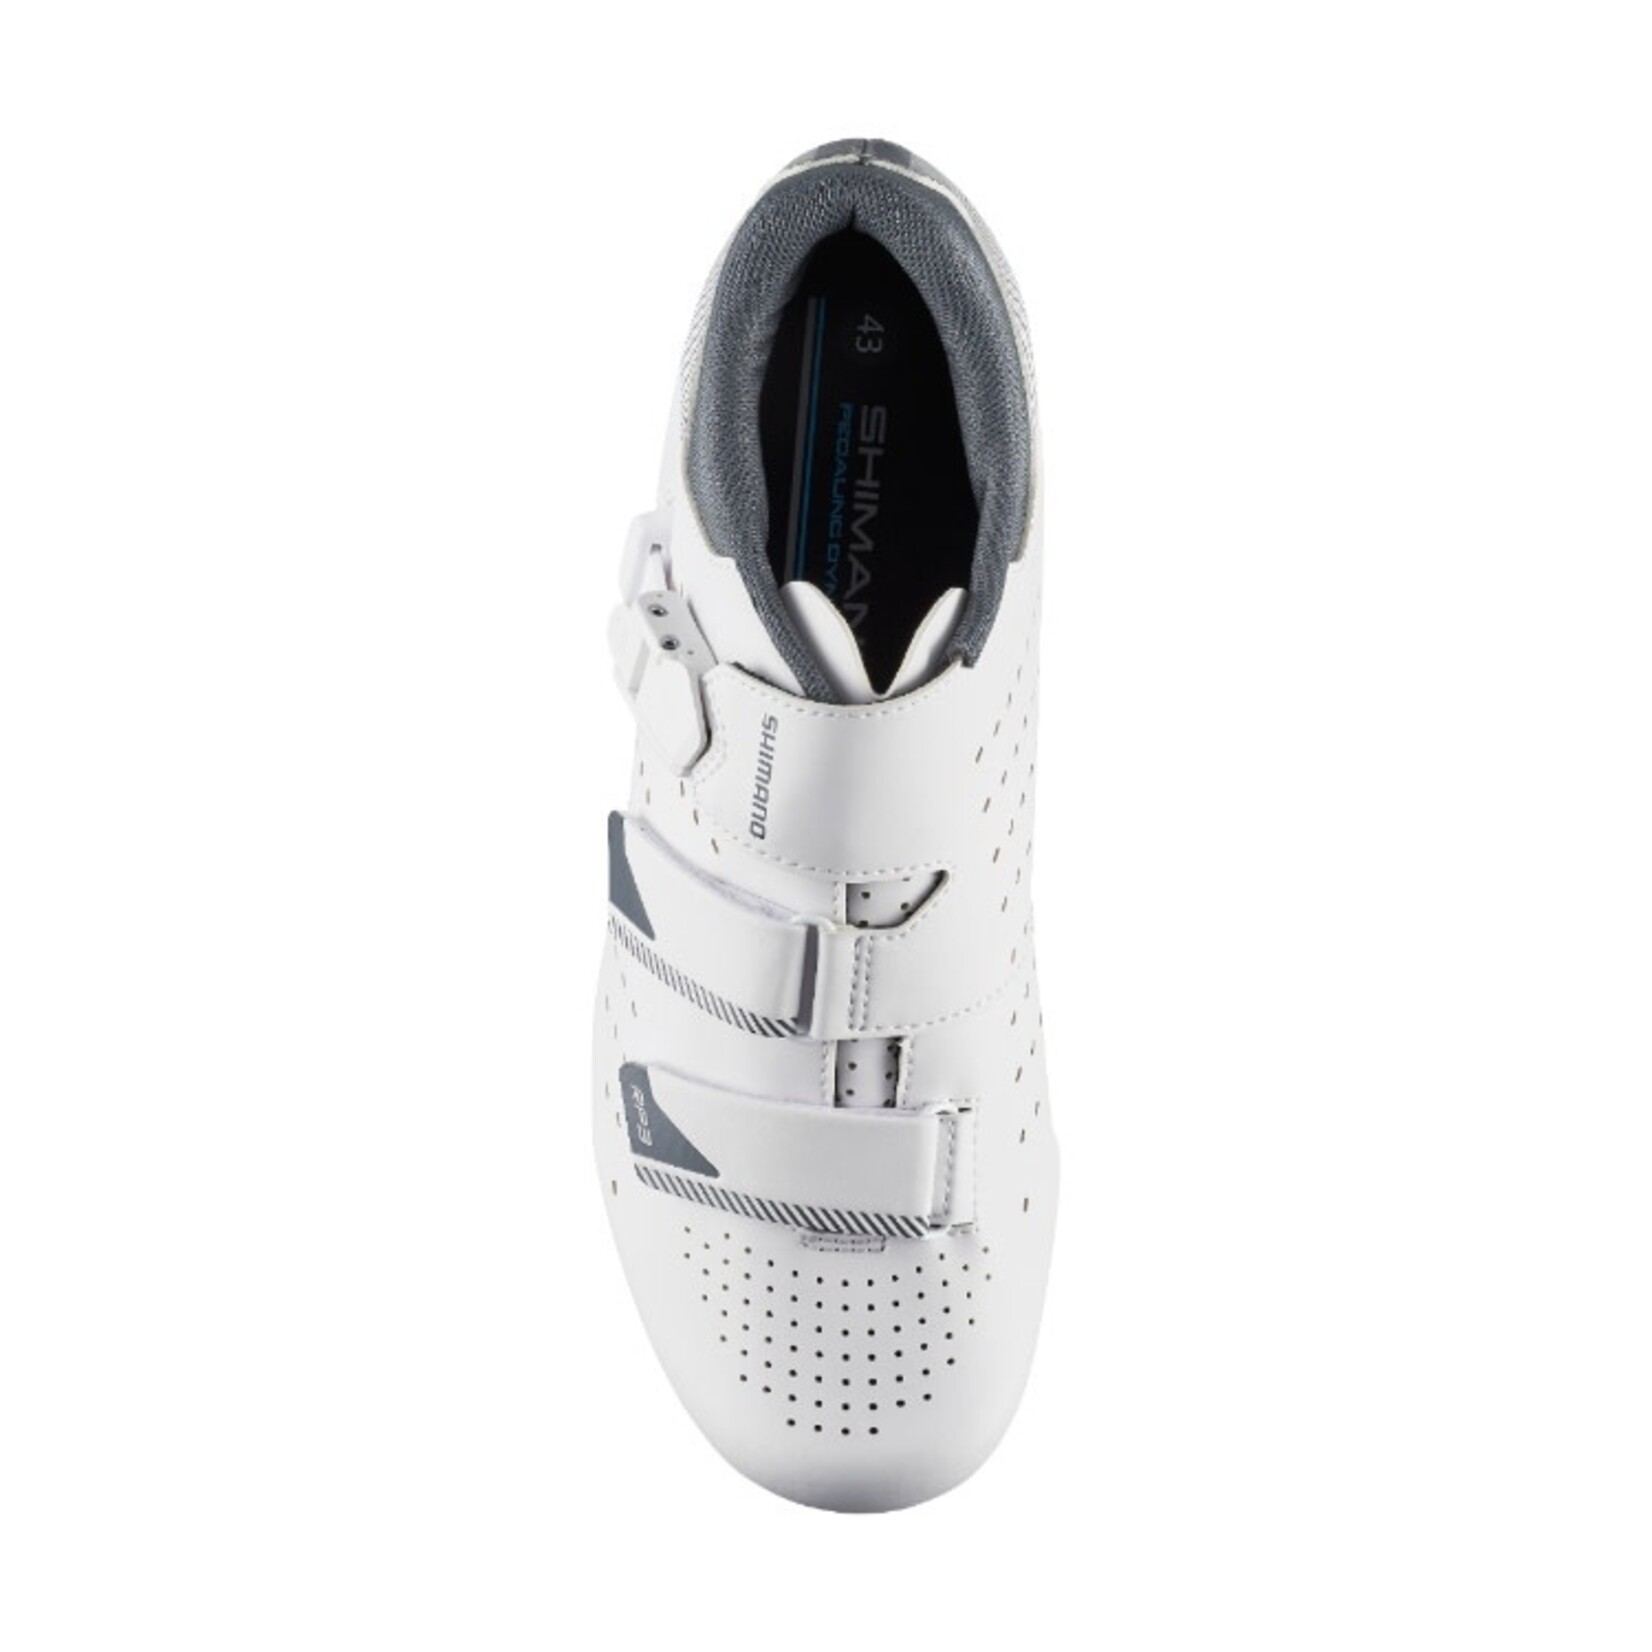 Shimano Shimano Bike/Cycling Shoe SH-RP301 - Black - Size 51 Synthetic Leather